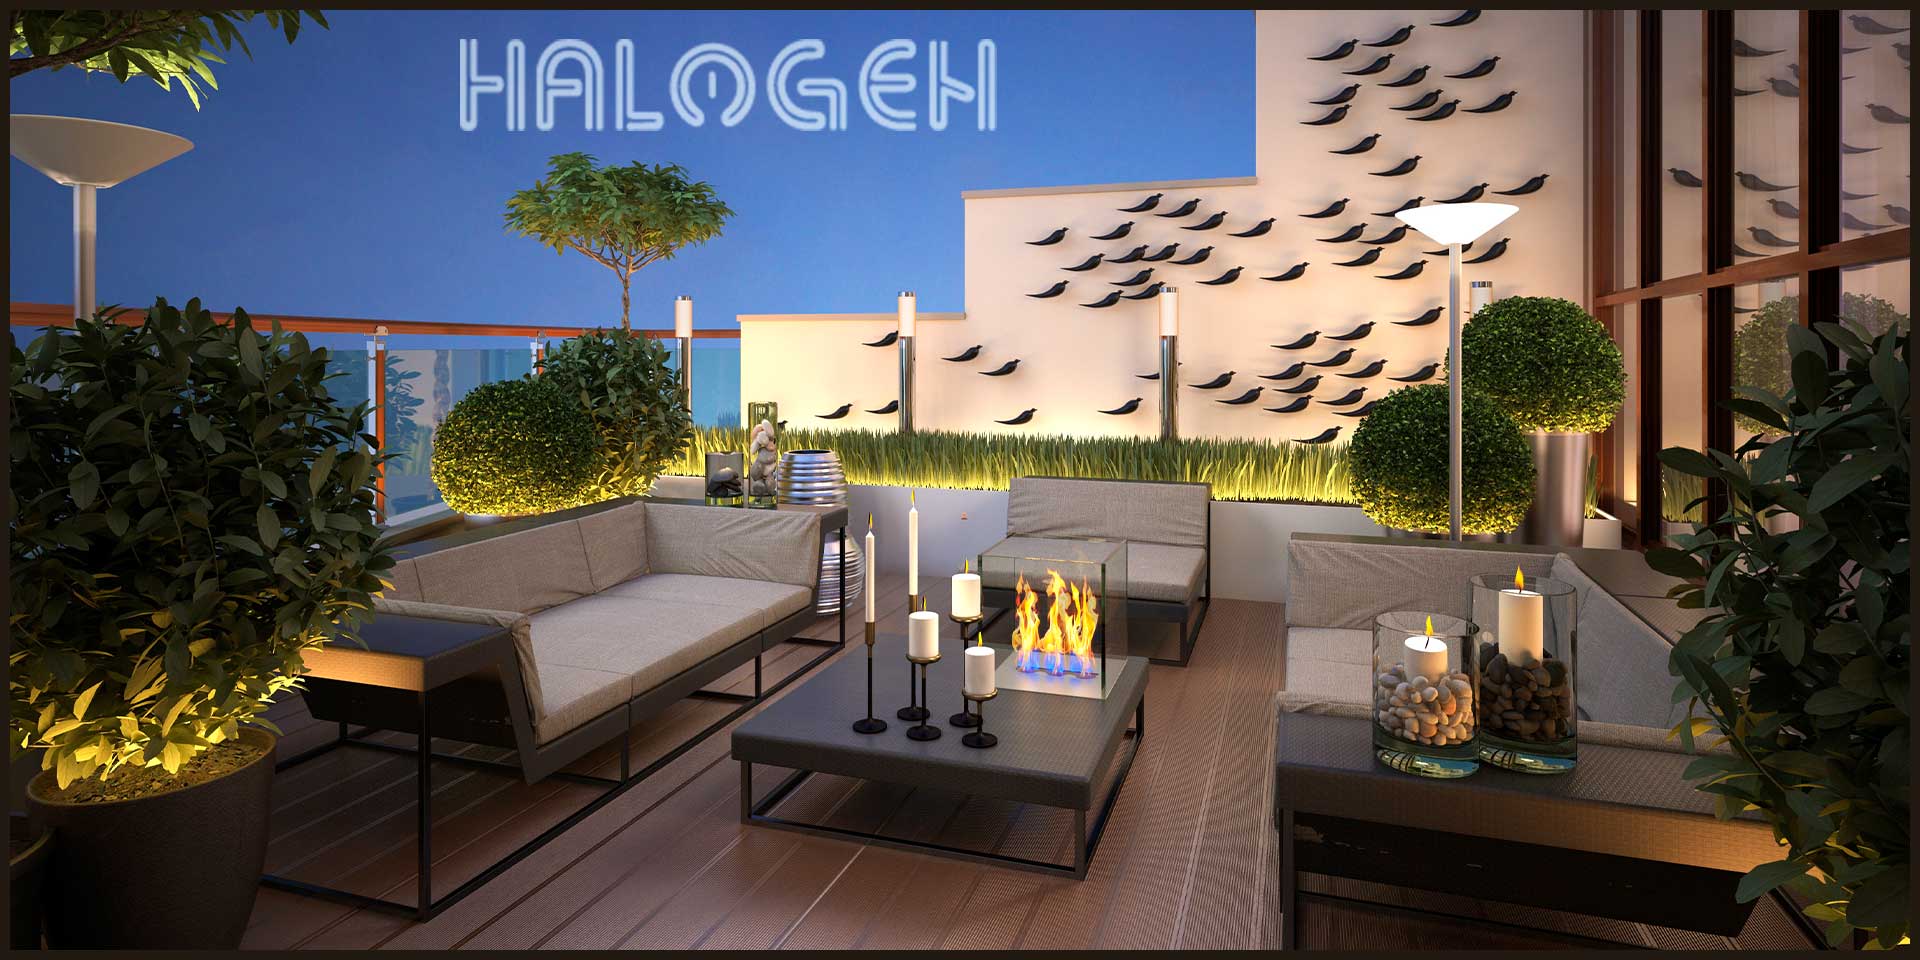 Spoljna rasveta za terase sa elegantnim lampama i nameštajem kao i sa puno zelenila iznad koje piše "Halogen".